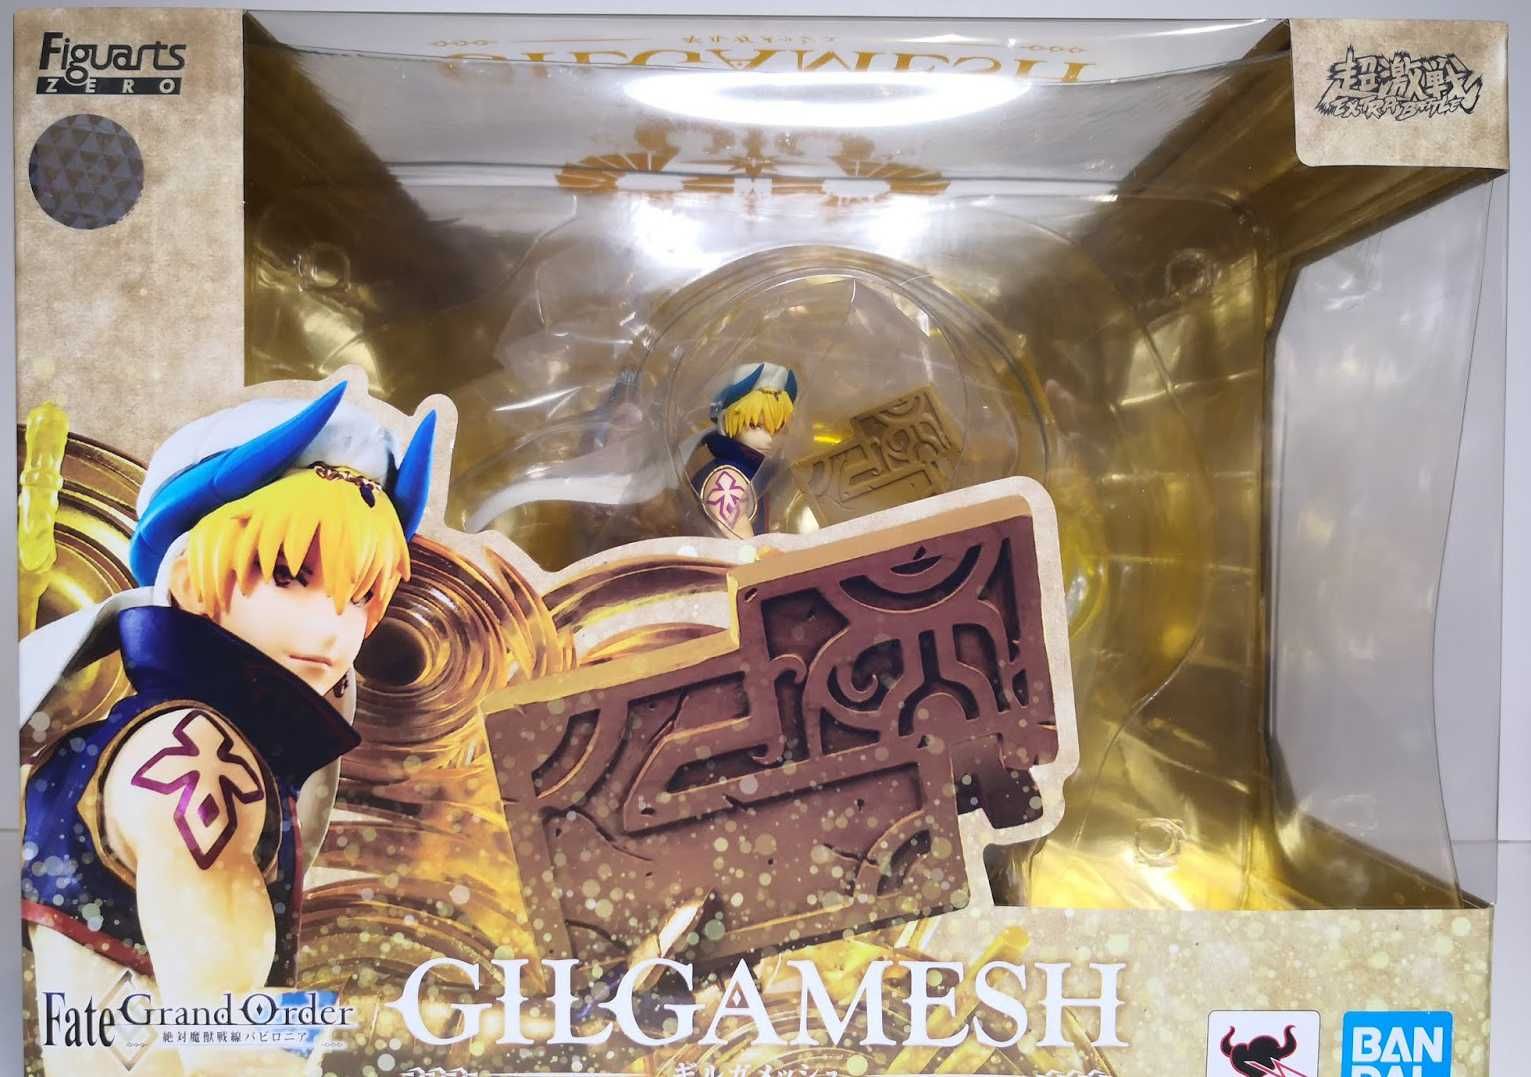 Gilgamesh - Fate Grand Order, Bandai